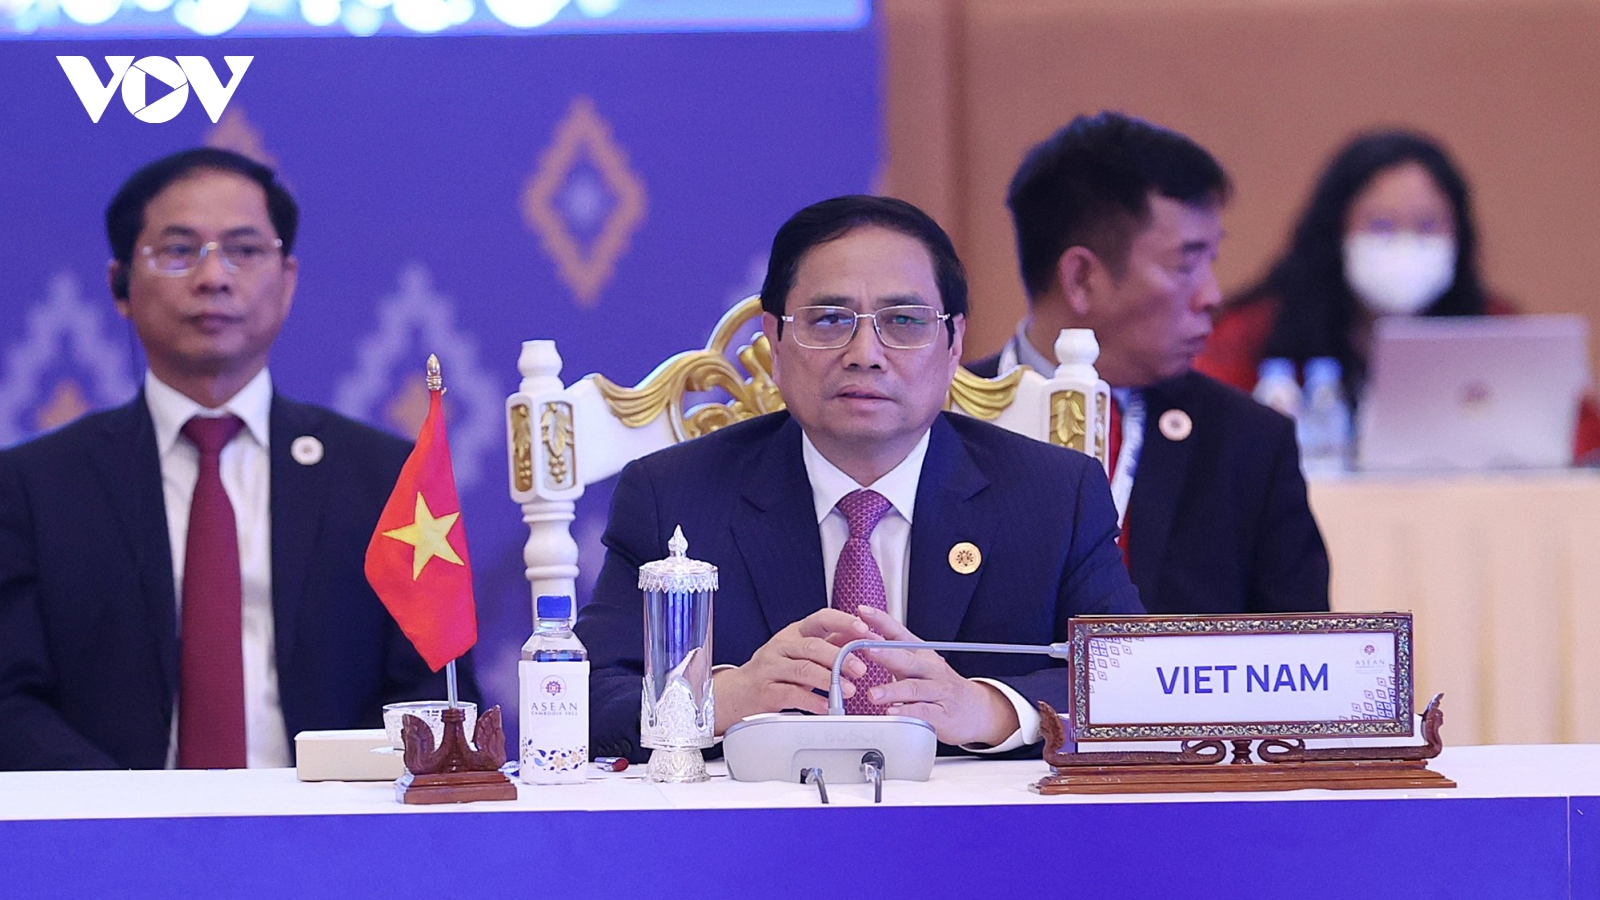 
        Thủ tướng Phạm Minh Chính: ASEAN cần tìm giải pháp khả thi, bền vững cho Myanmar
                              